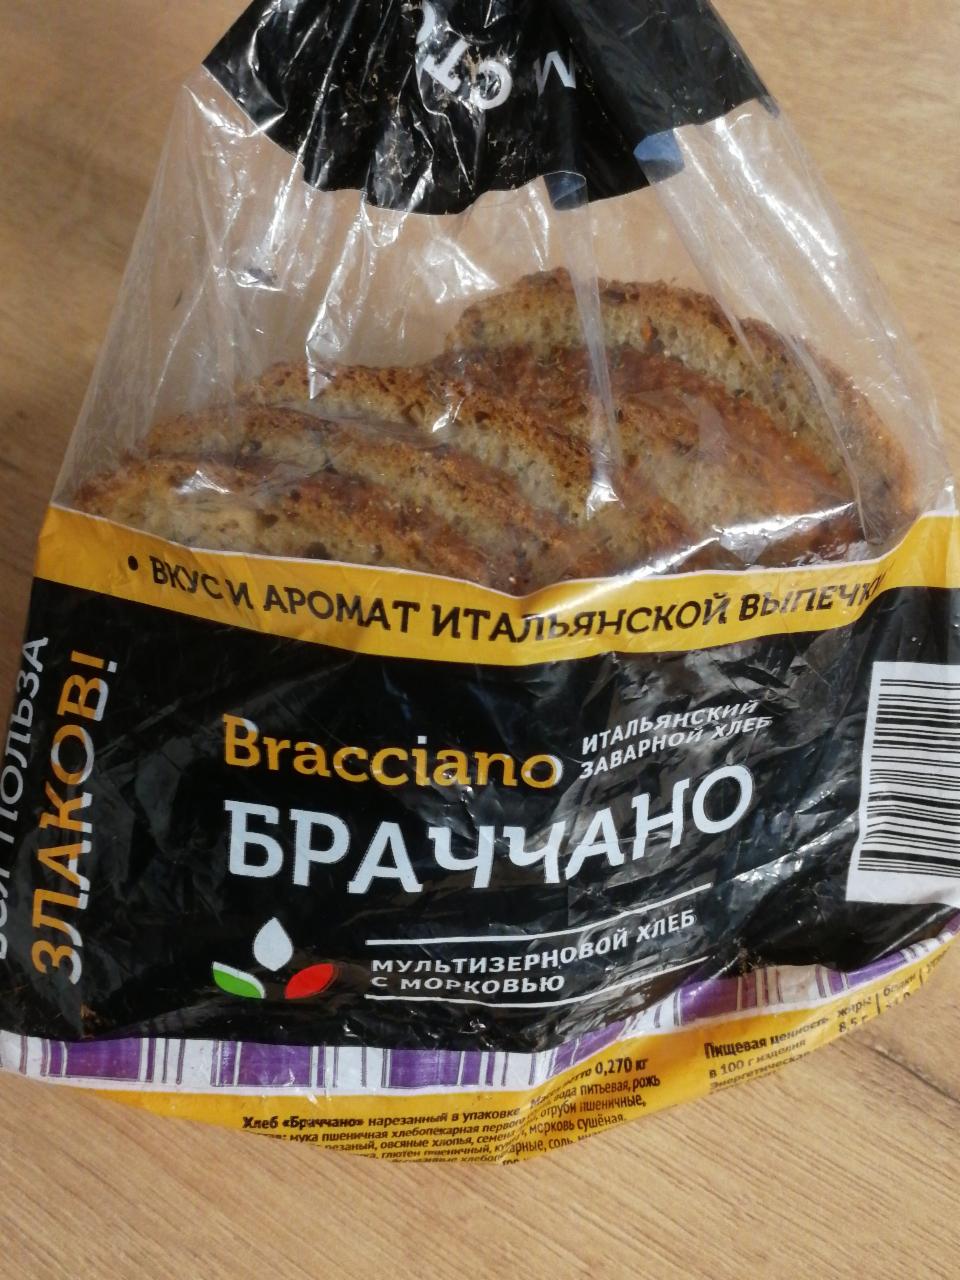 Фото - Итальянский заварной хлеб Браччано Bracciano